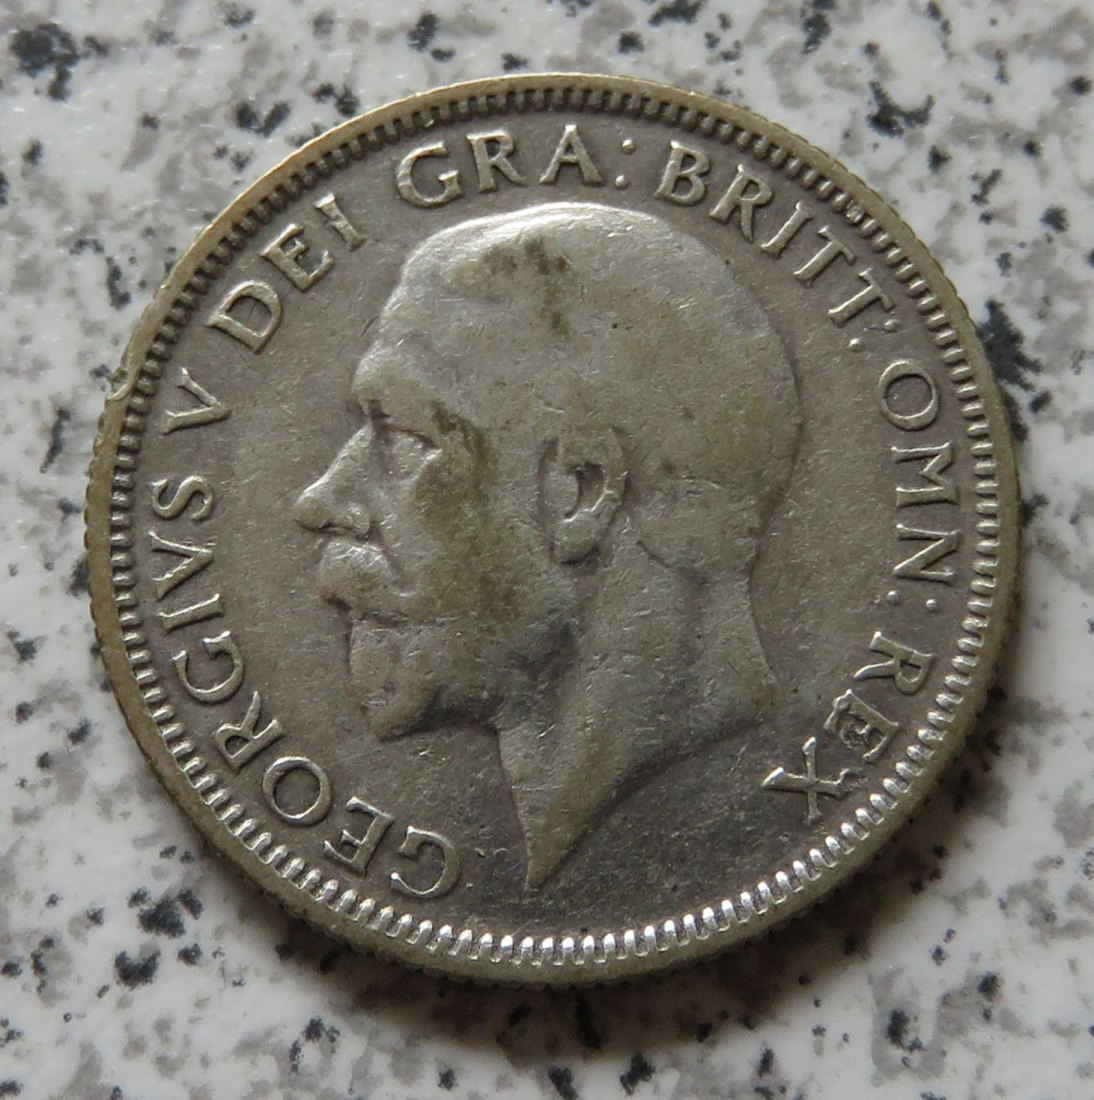  Großbritannien 1 Shilling 1933   